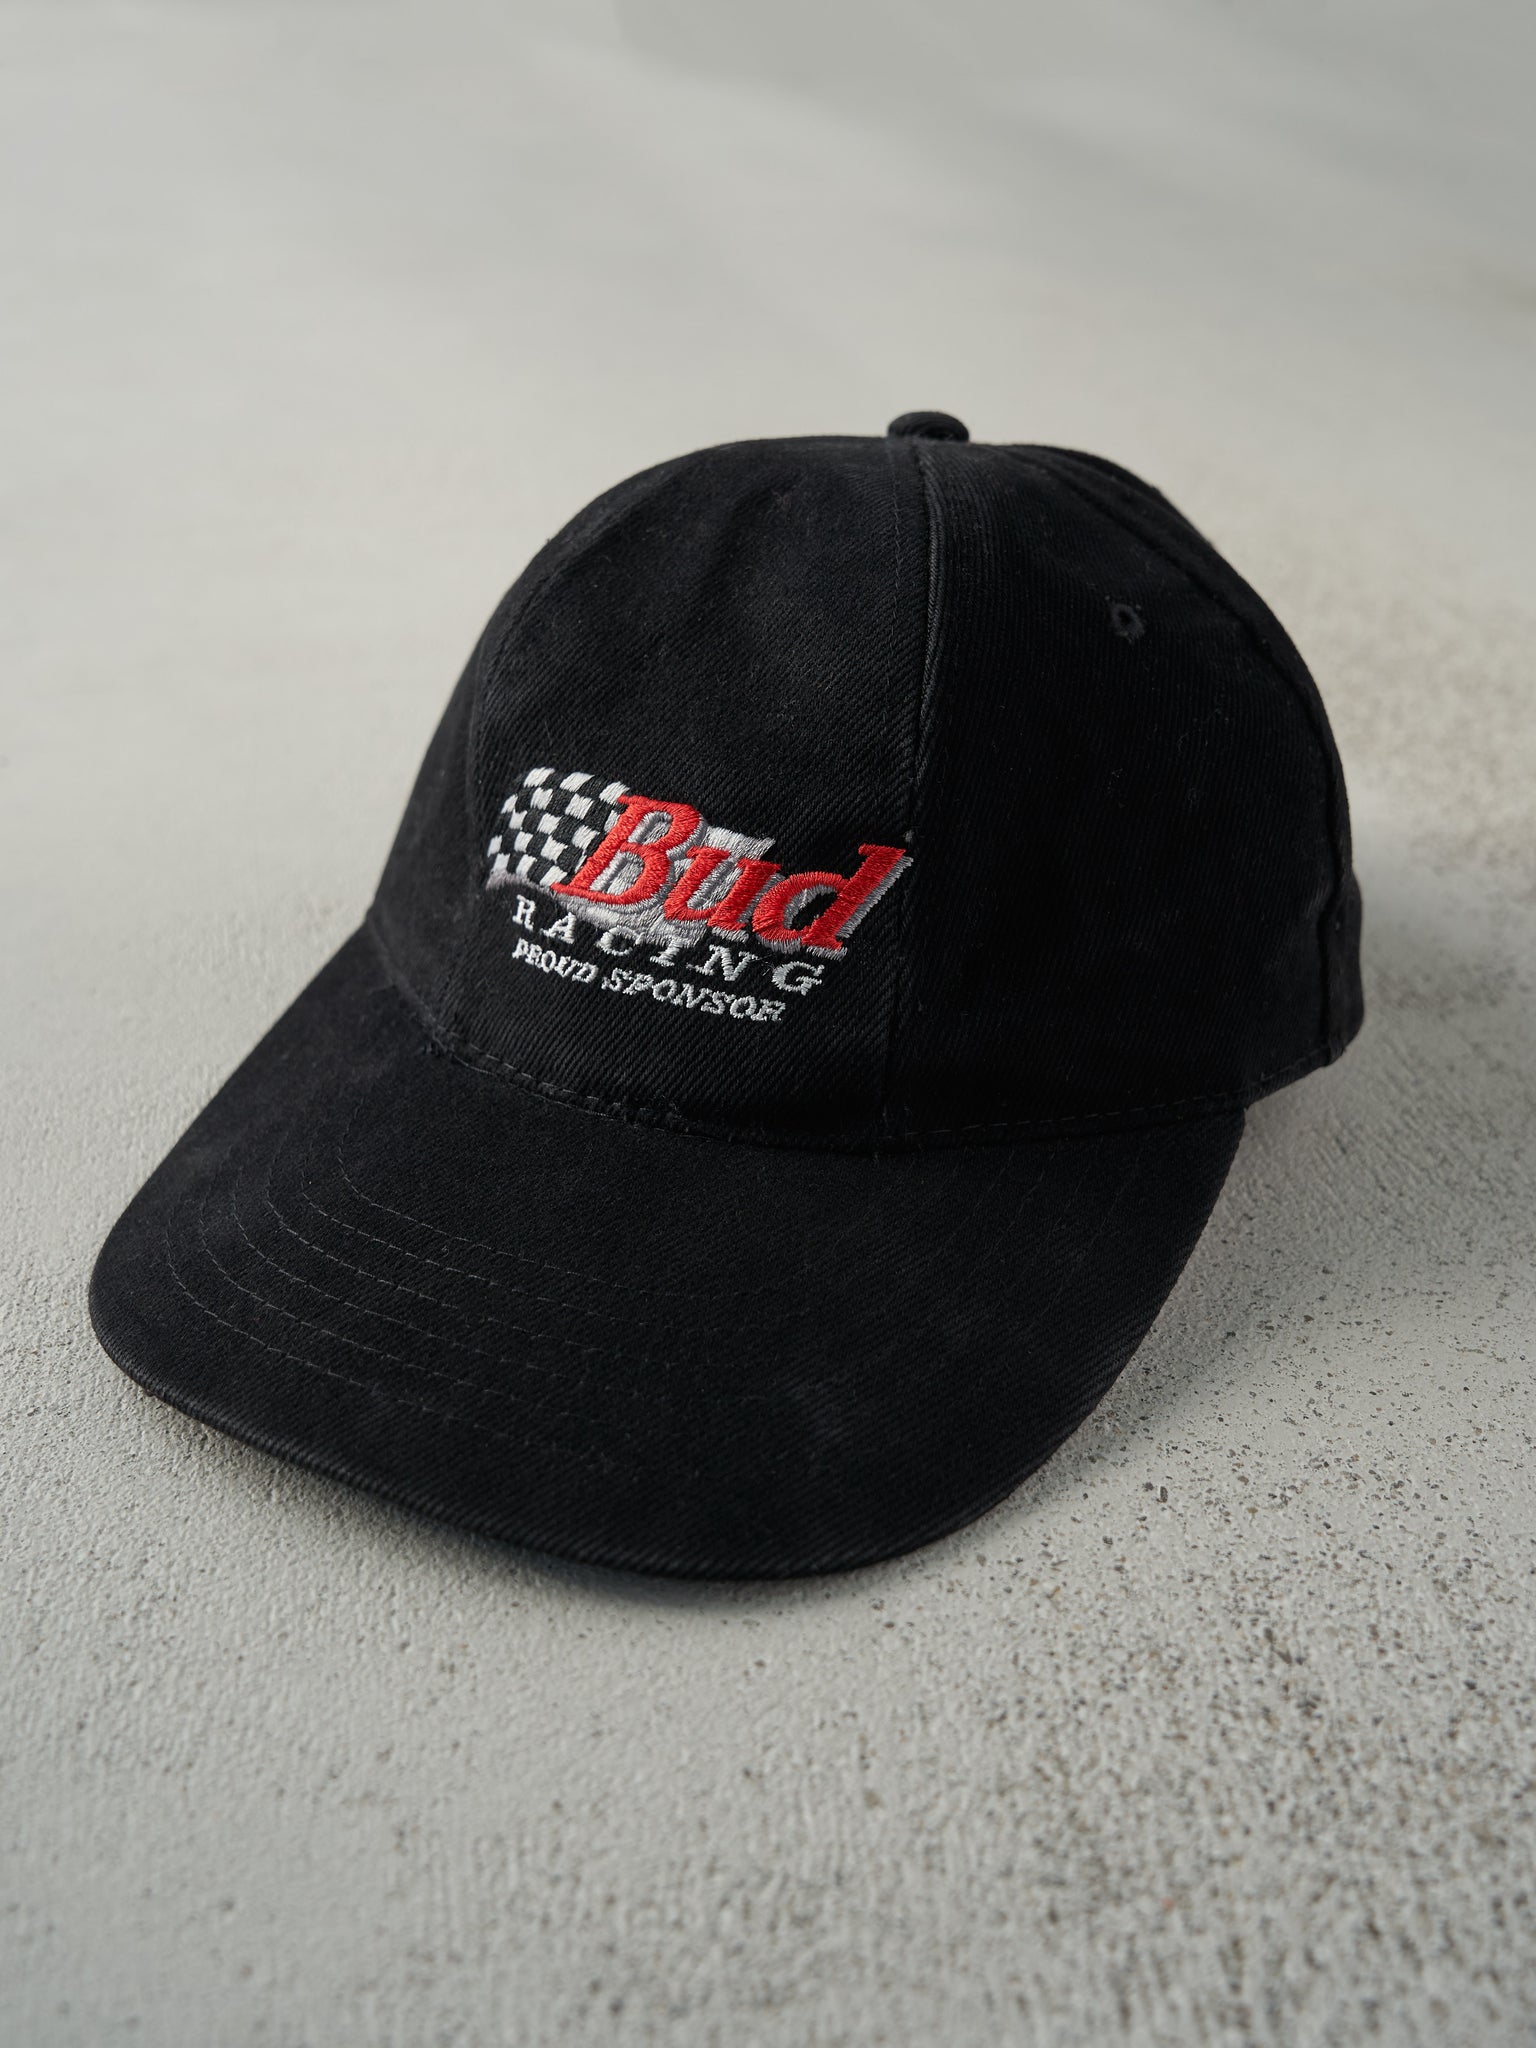 Vintage 90s Black Budweiser Racing Strap Back Hat